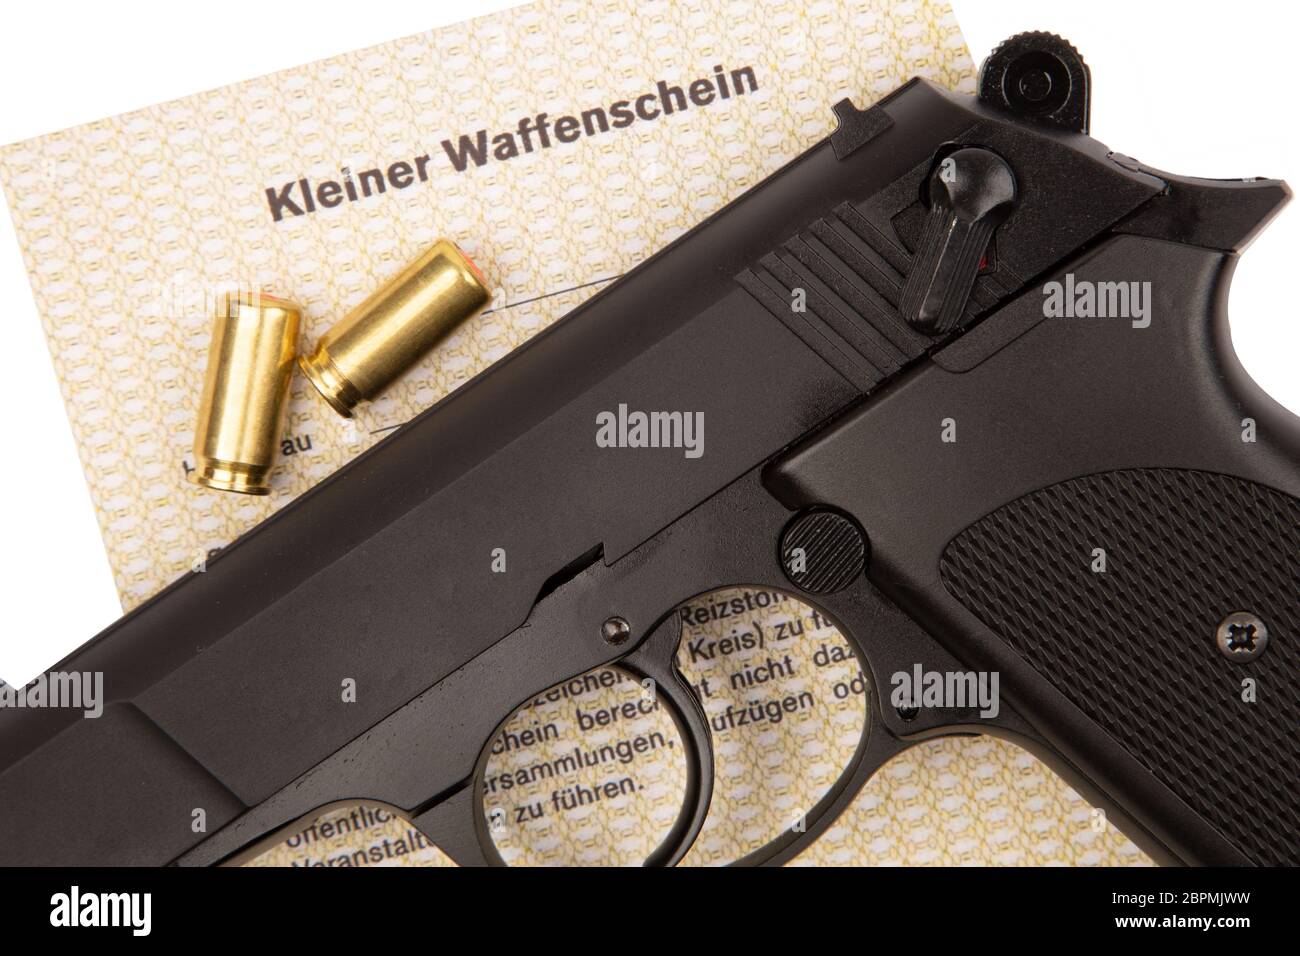 https://c8.alamy.com/compde/2bpmjww/deutsche-text-kleine-waffe-in-deutschland-ermoglicht-die-schrotflinte-und-gas-pistolen-2bpmjww.jpg